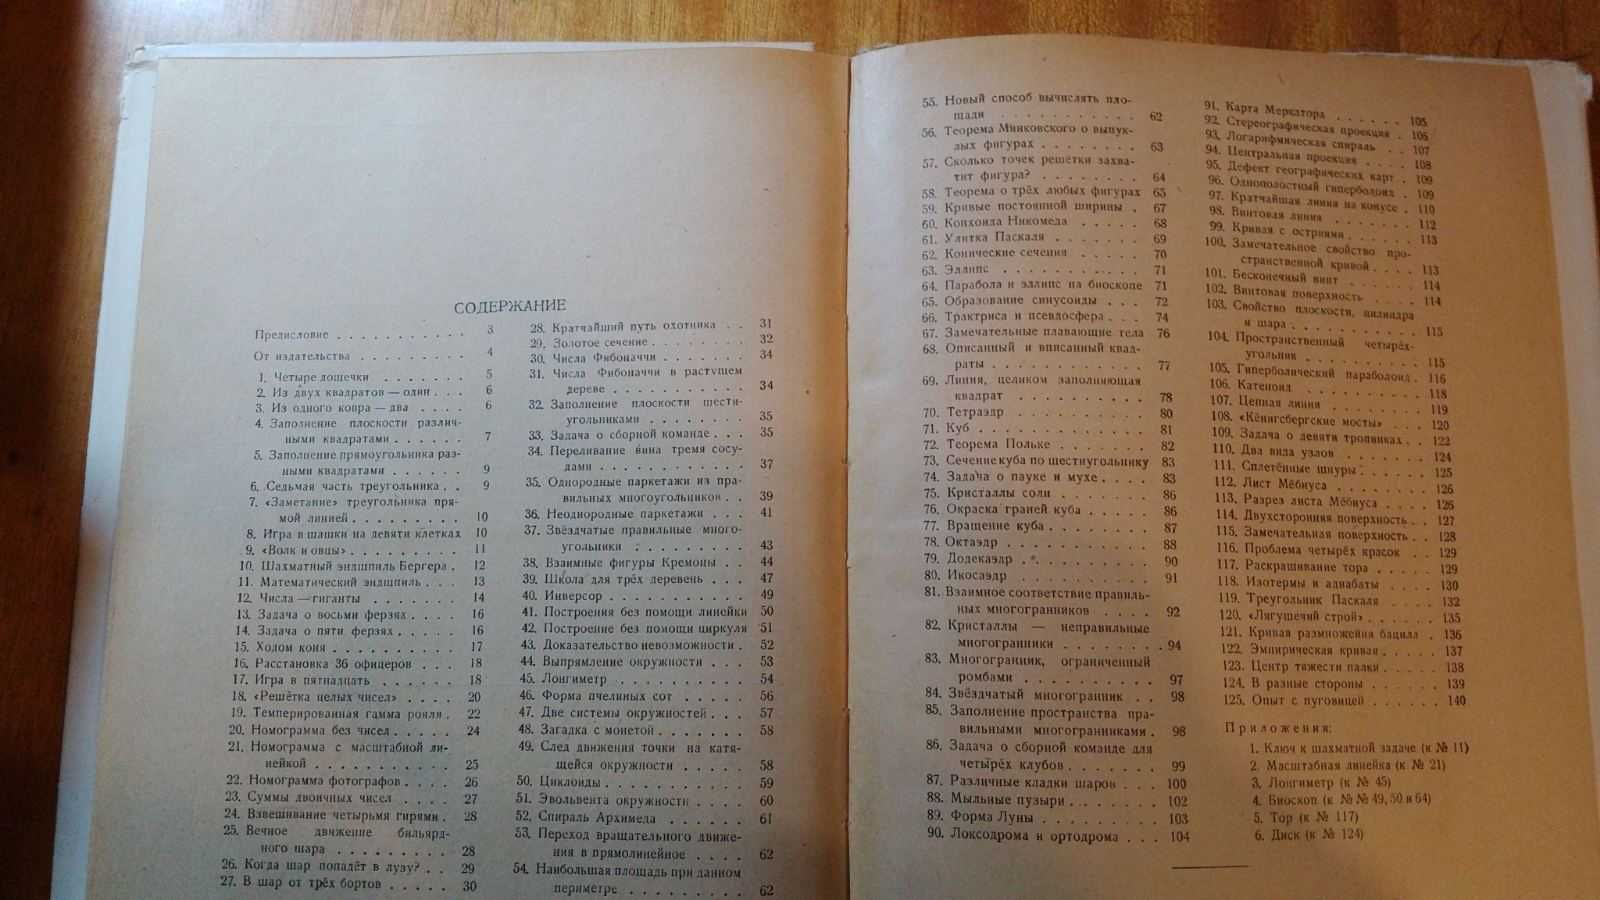 Математика для инженеров 1951, Современная физика Геометр.и др. Яз.анг